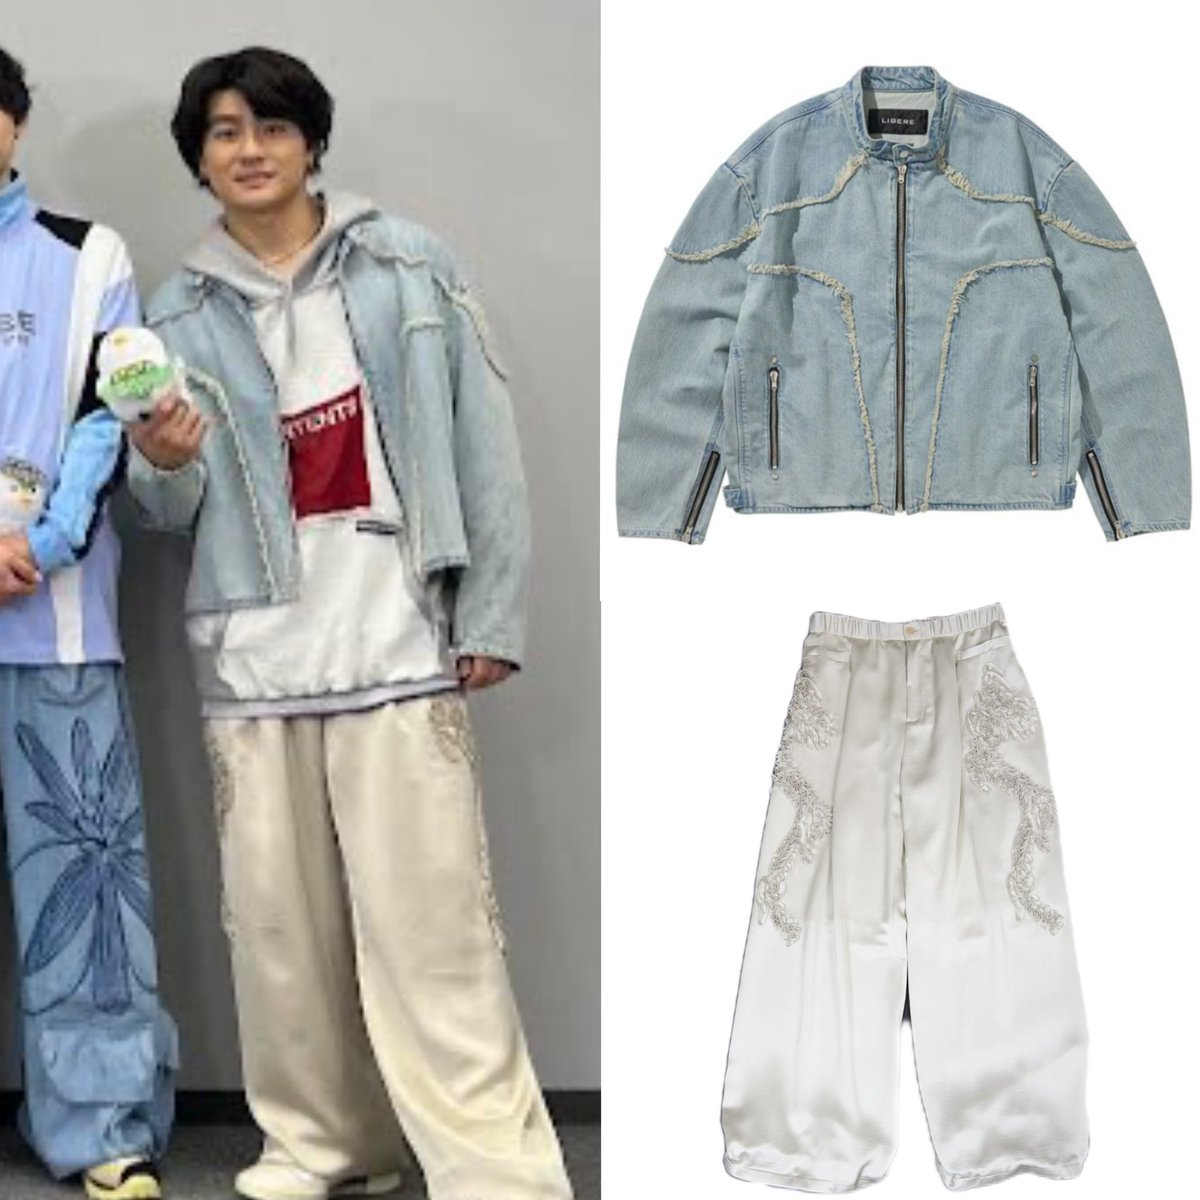 森本慎太郎 - SixTONES
衣装メモ✍️

ジャケット
☞LIBERE
☞¥89,100

パンツ
☞TAAKK
☞¥49,500